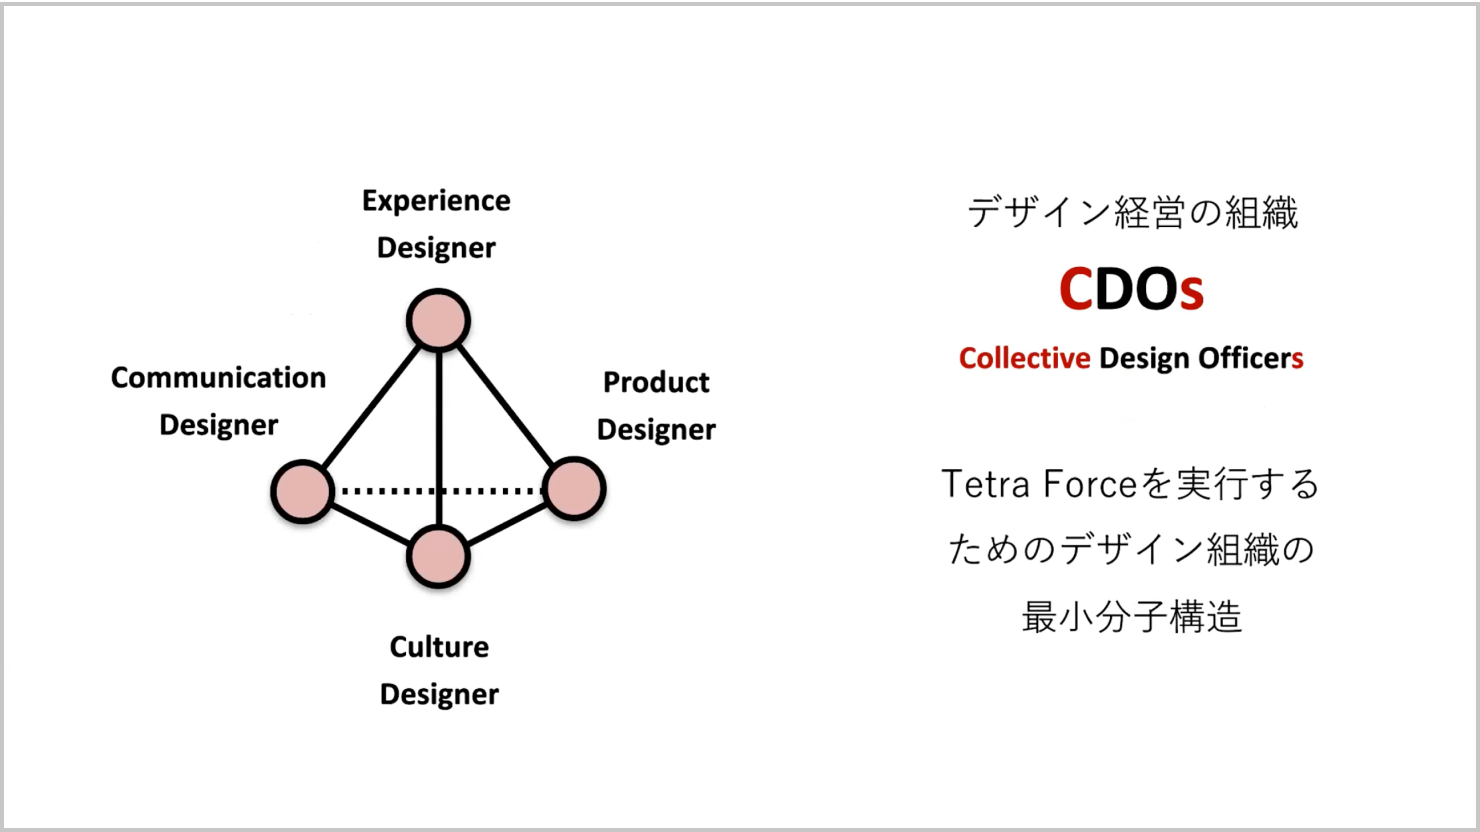 発表資料：CDOsを説明した図。Tetra Forceを説明した平面図を立体にした4面体の各頂点（結節点）にエクスペリエンスデザイナー、カルチャーデザイナー、プロダクトデザイナー、コミュニケーションデザイナーが個別に配置されている。